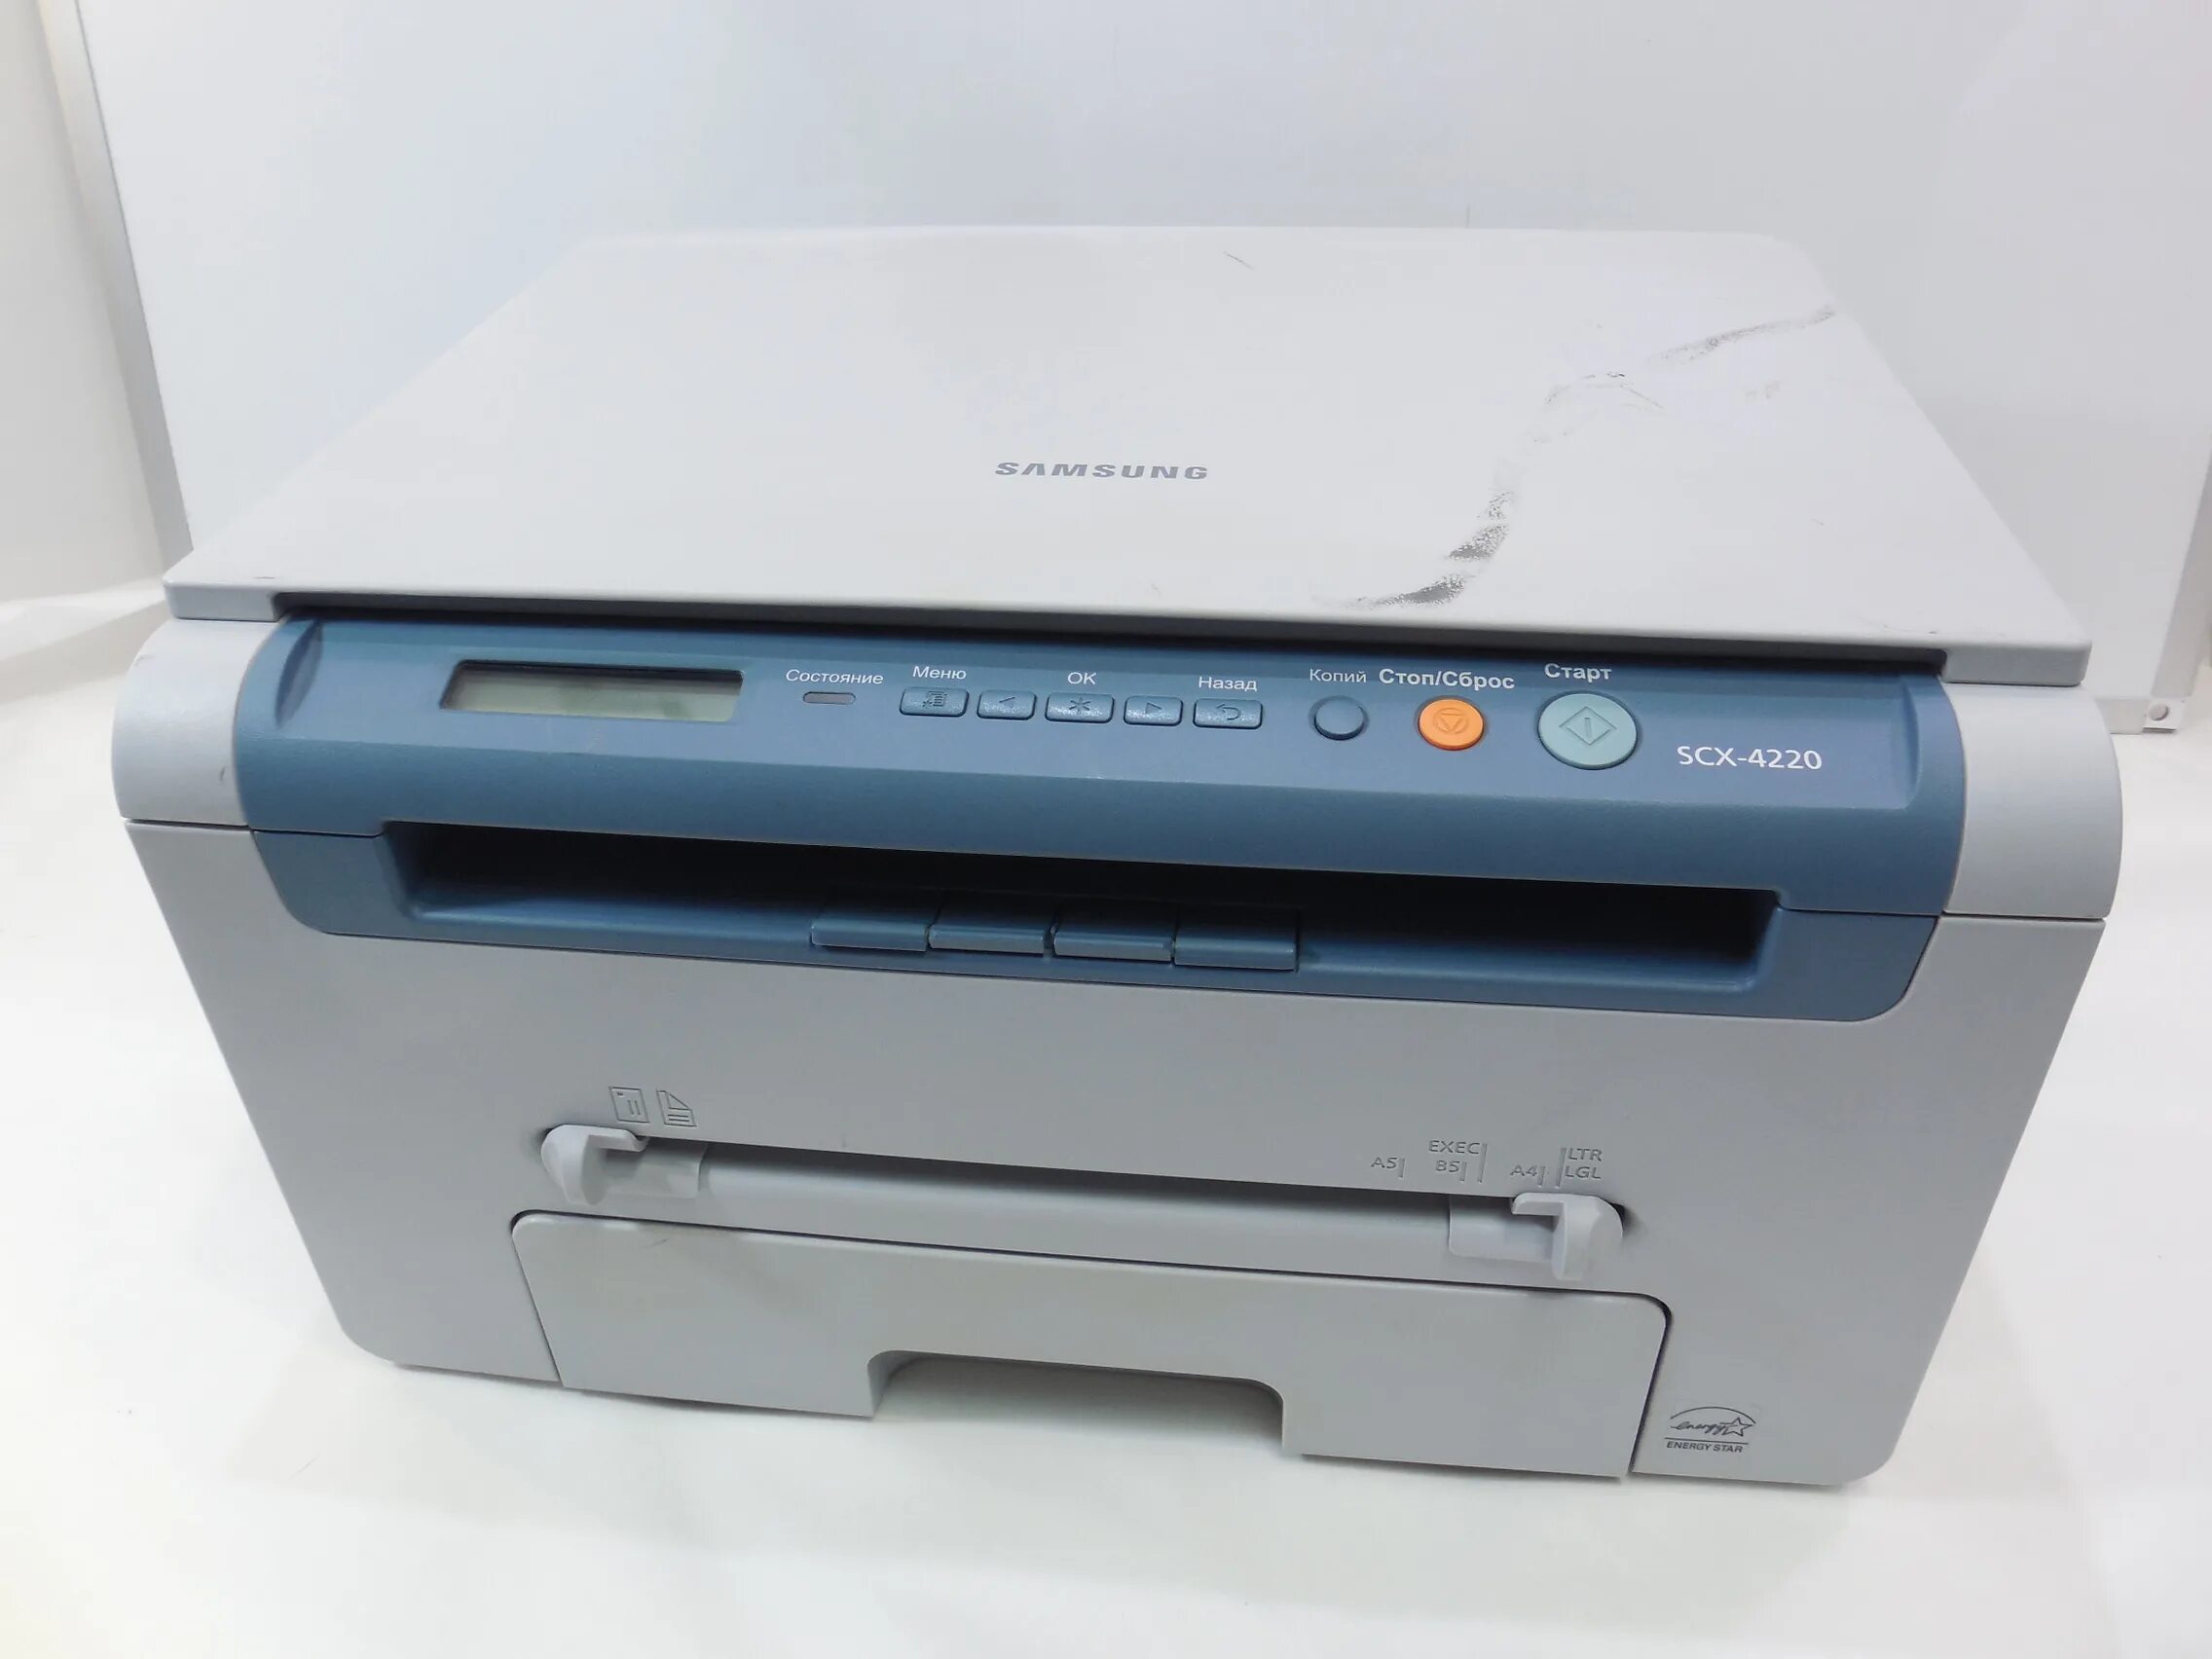 Лазерный принтер самсунг 4200. МФУ лазерное Samsung SCX-4200. Принтер сканер копир Samsung SCX 4200. Samsung SCX 4220.